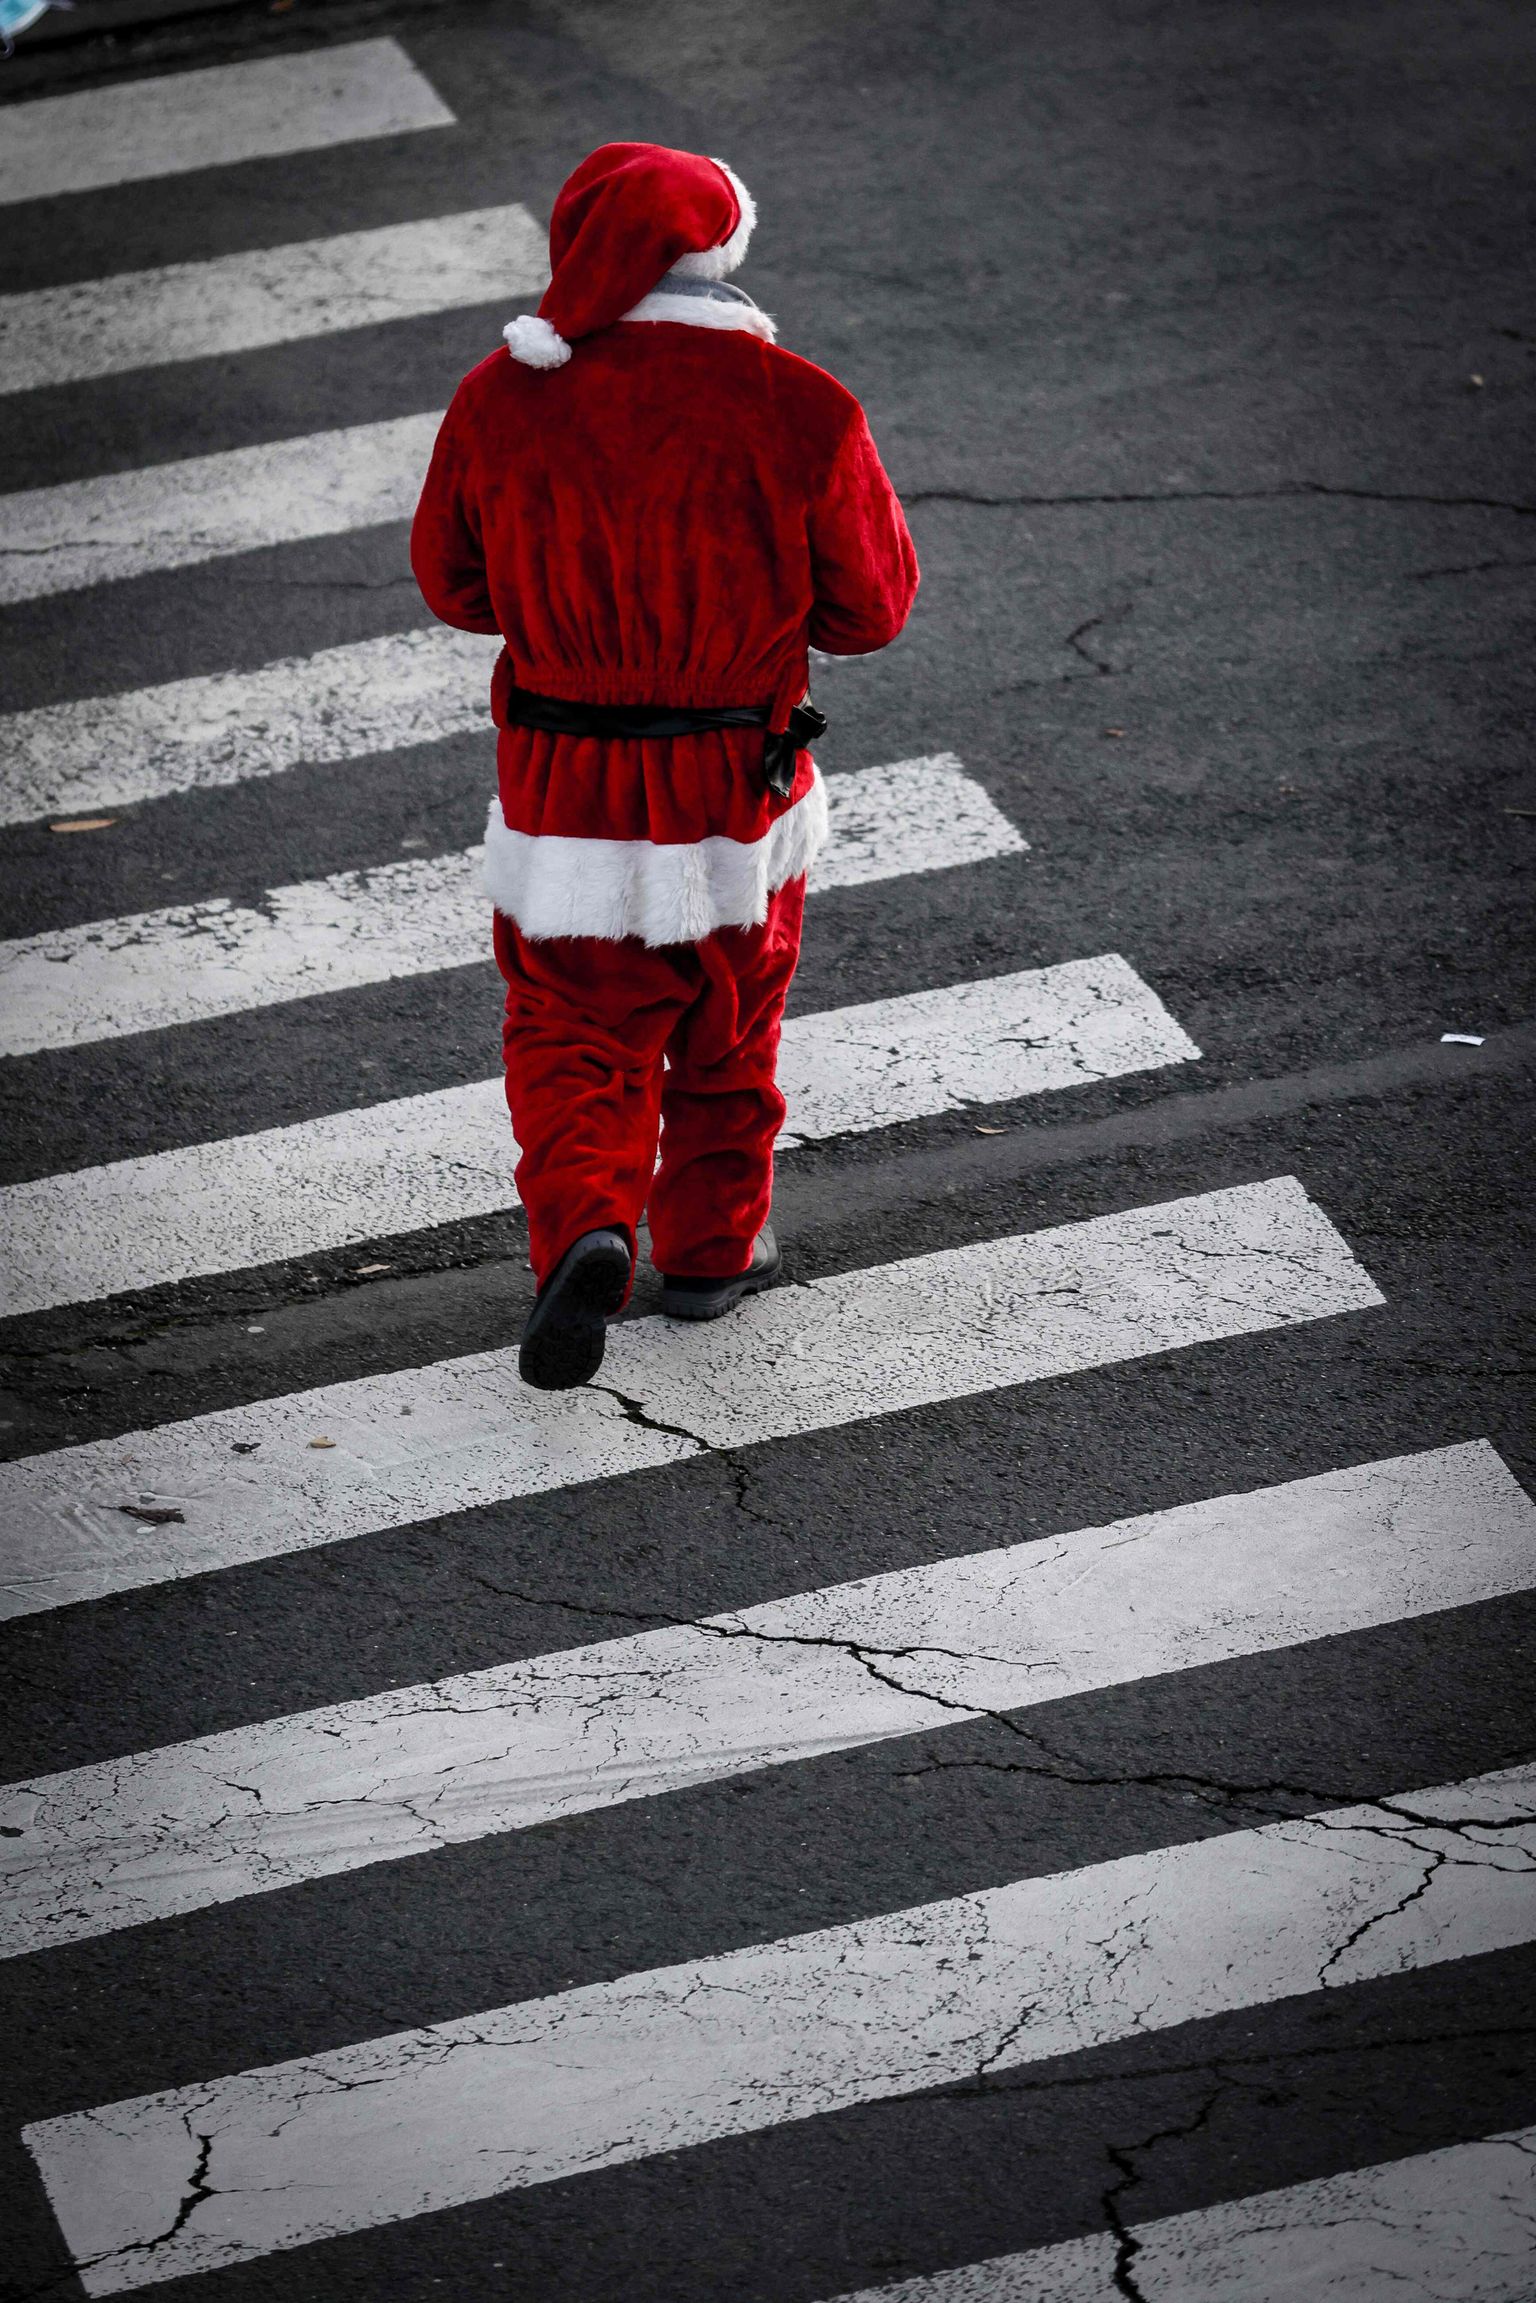 Jõuluvana kostüümis mees tänaval. Foto pole seotud kõnealuse juhtumiga.